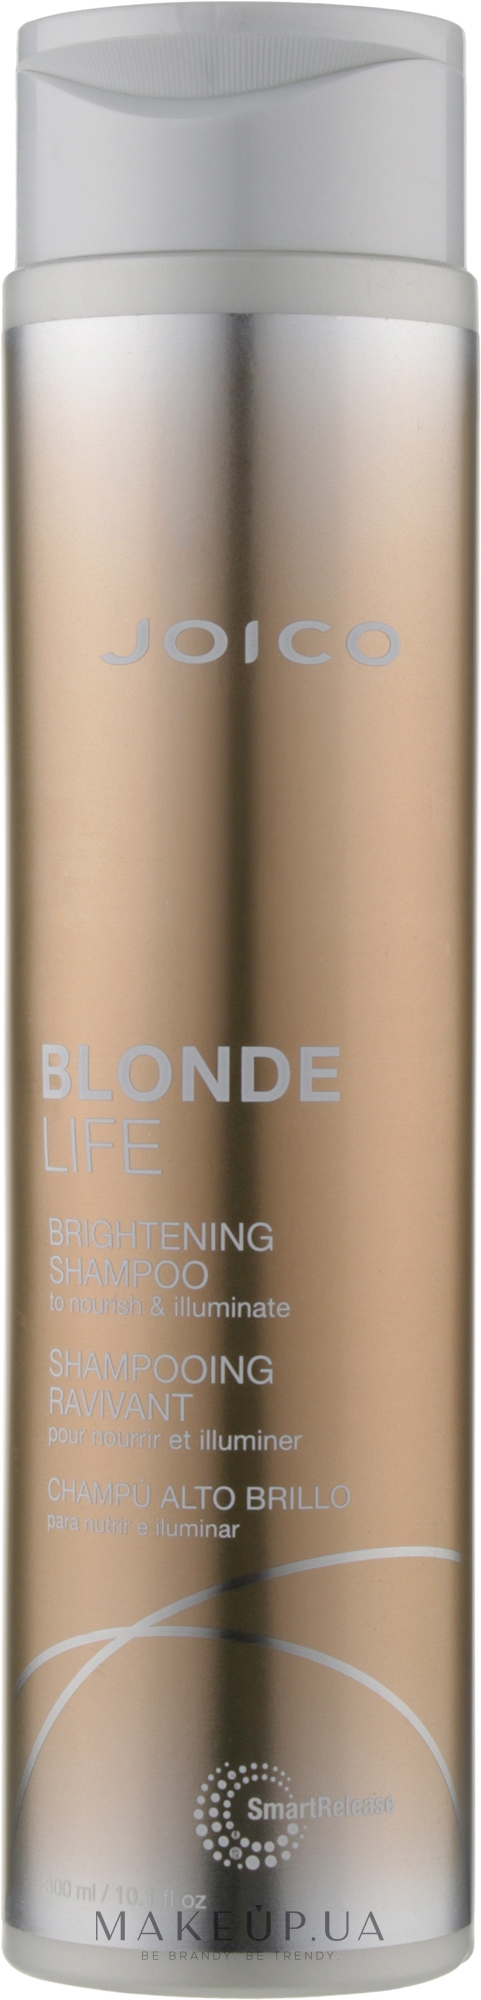 Шампунь для сохранения яркости блонда - SR Blonde Life/Blonde Life Brightening Shampoo — фото 300ml